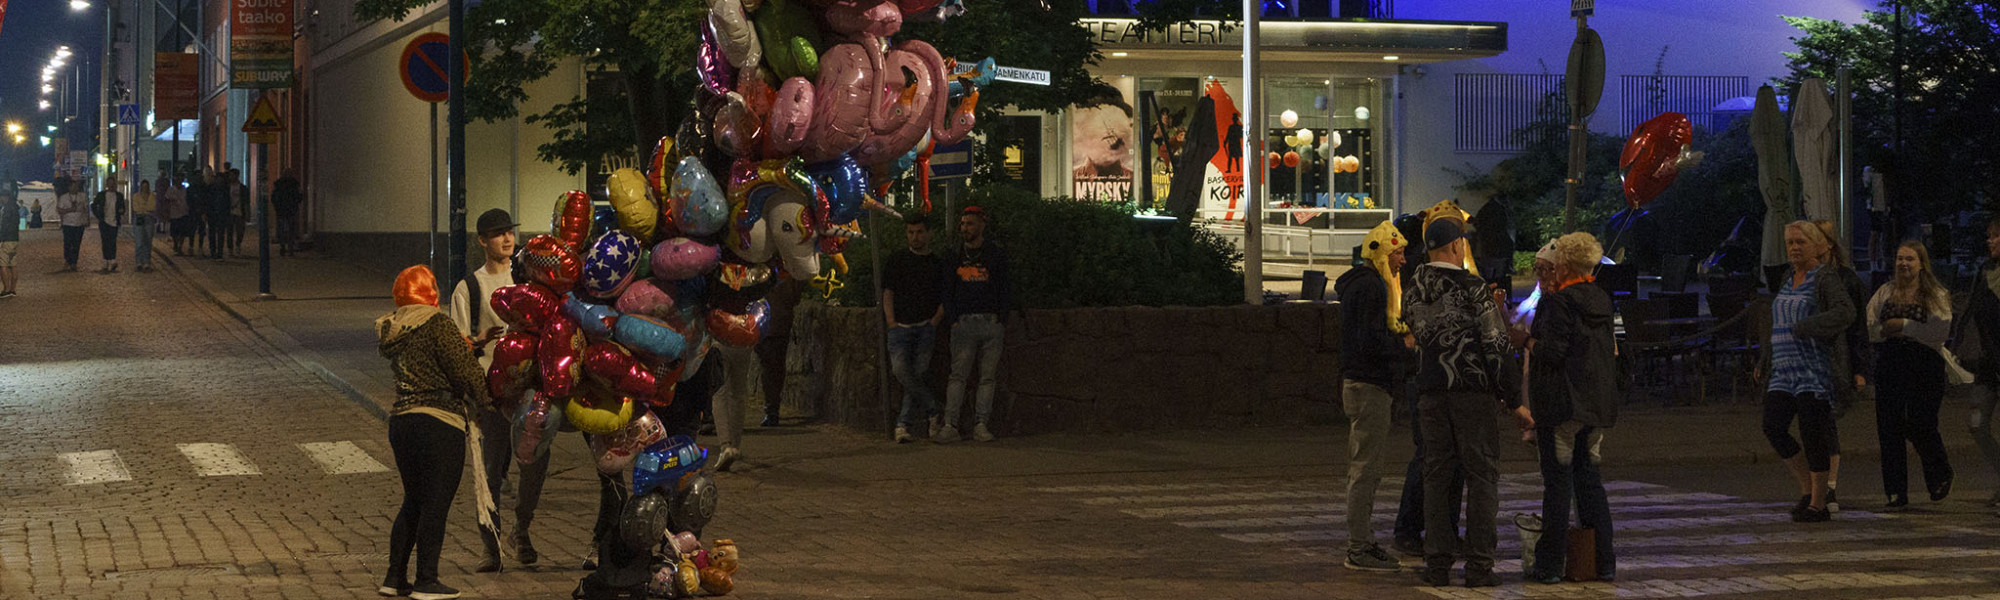 Ilmapallojen myyjä ja ihmisiä teatterin edessä illalla Meripäivillä.